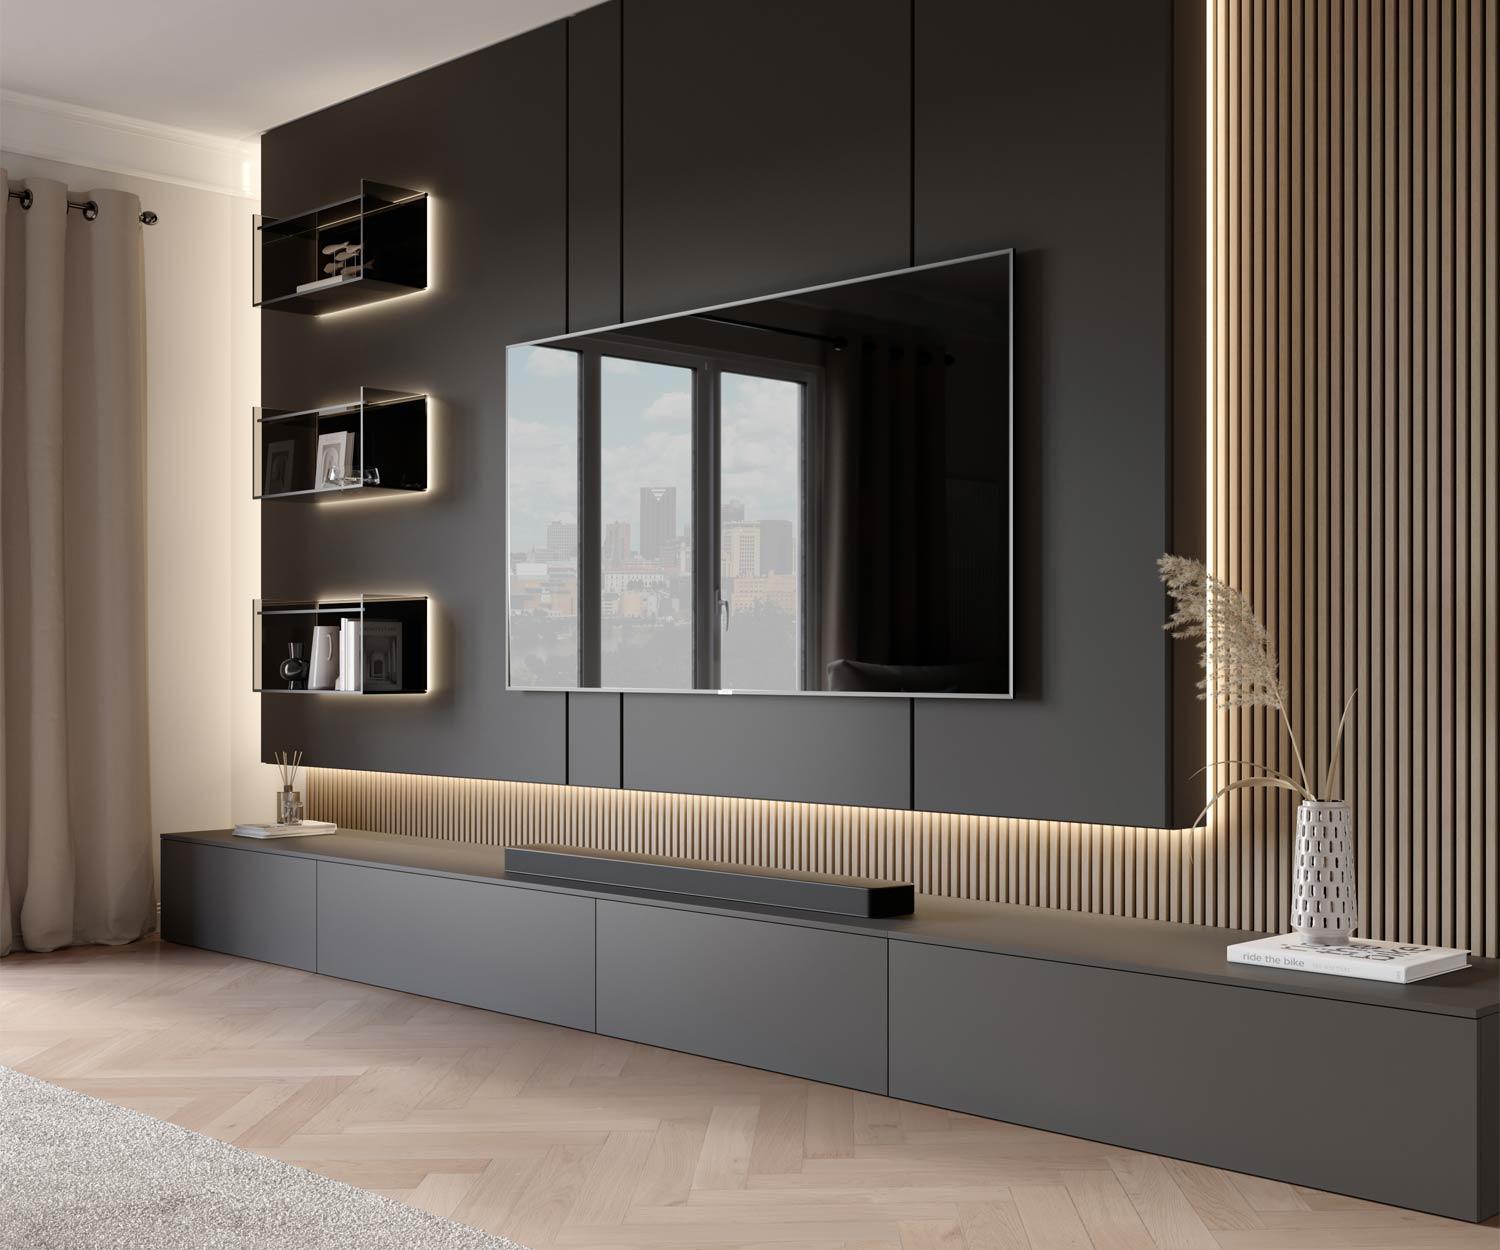 Design Luxus Wohnwand C100 mit TV Paneel und Glasregal beleuchtet